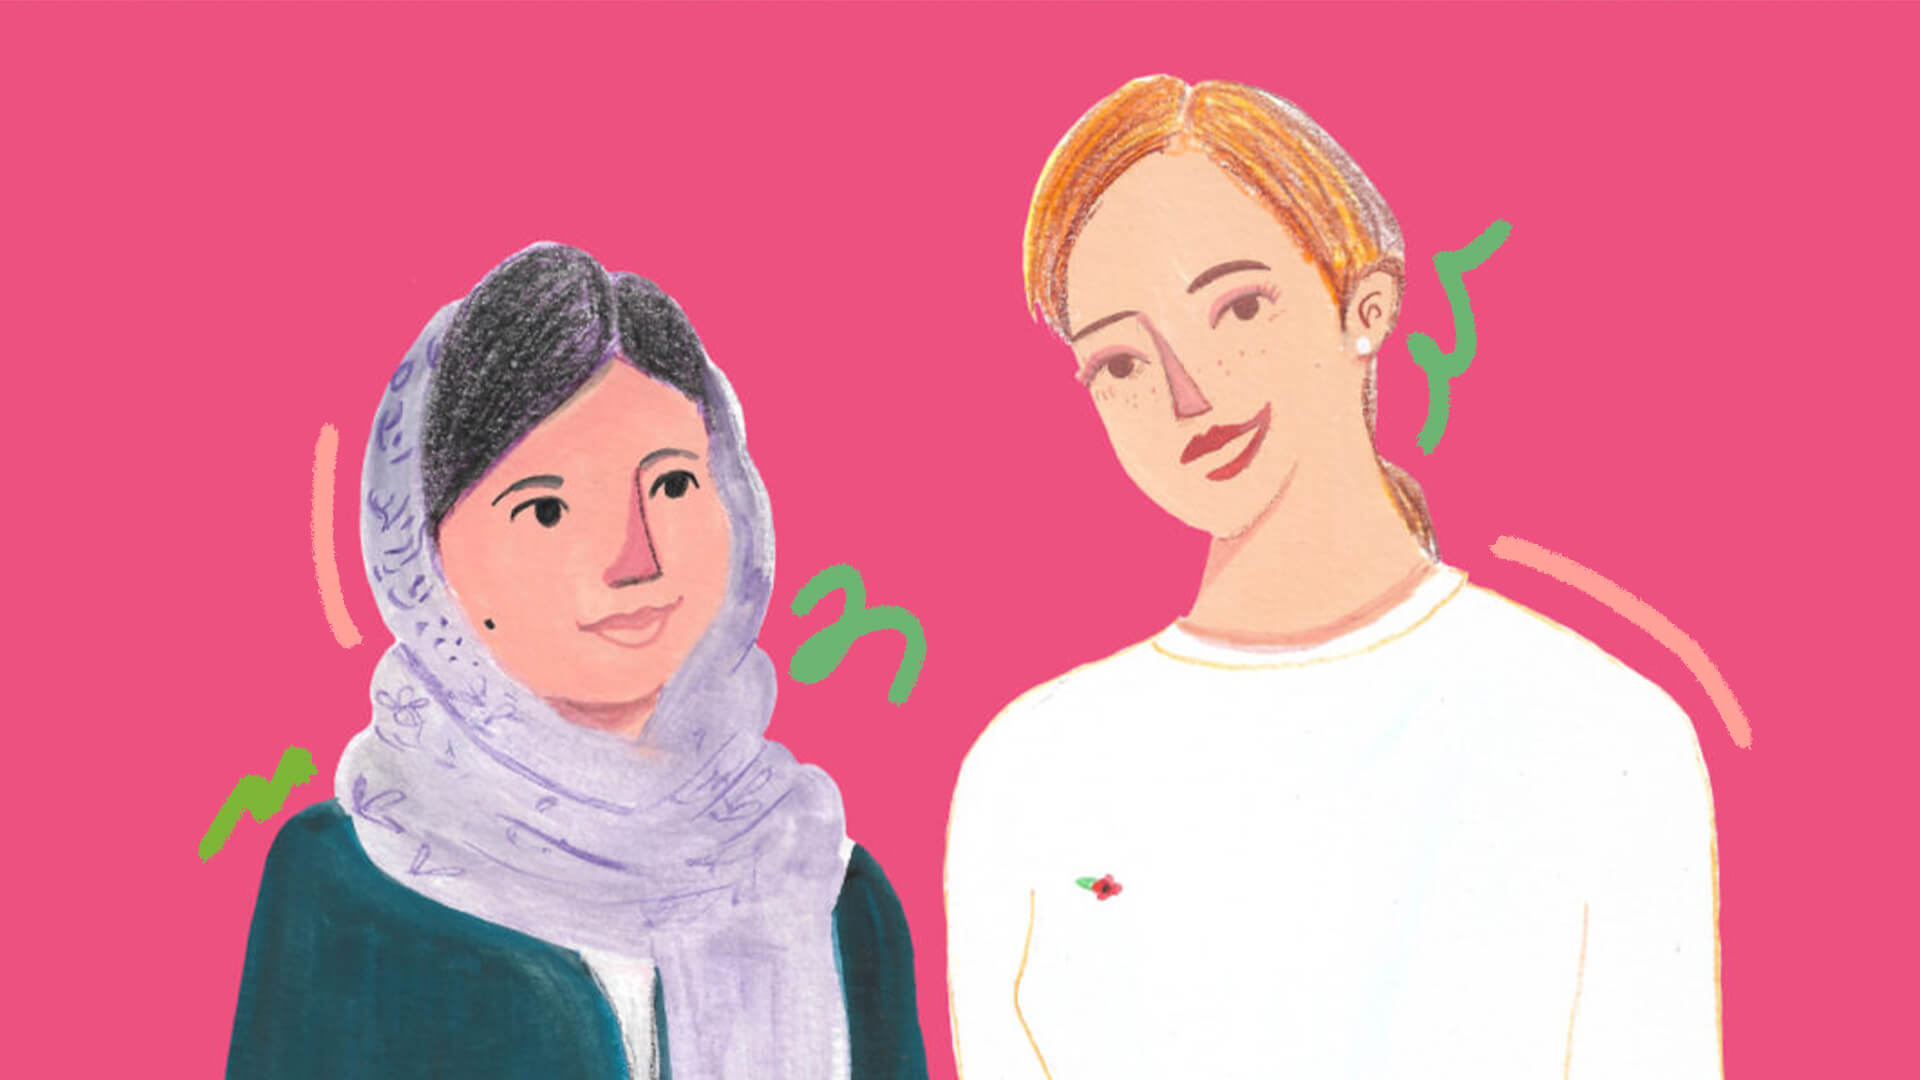 Ilustração do miolo do livro Amigas que se encontraram na história com a dupla Emma Watson & Malala Yousafzai num fundo rosa e rabiscos verdes como intervenções de arte